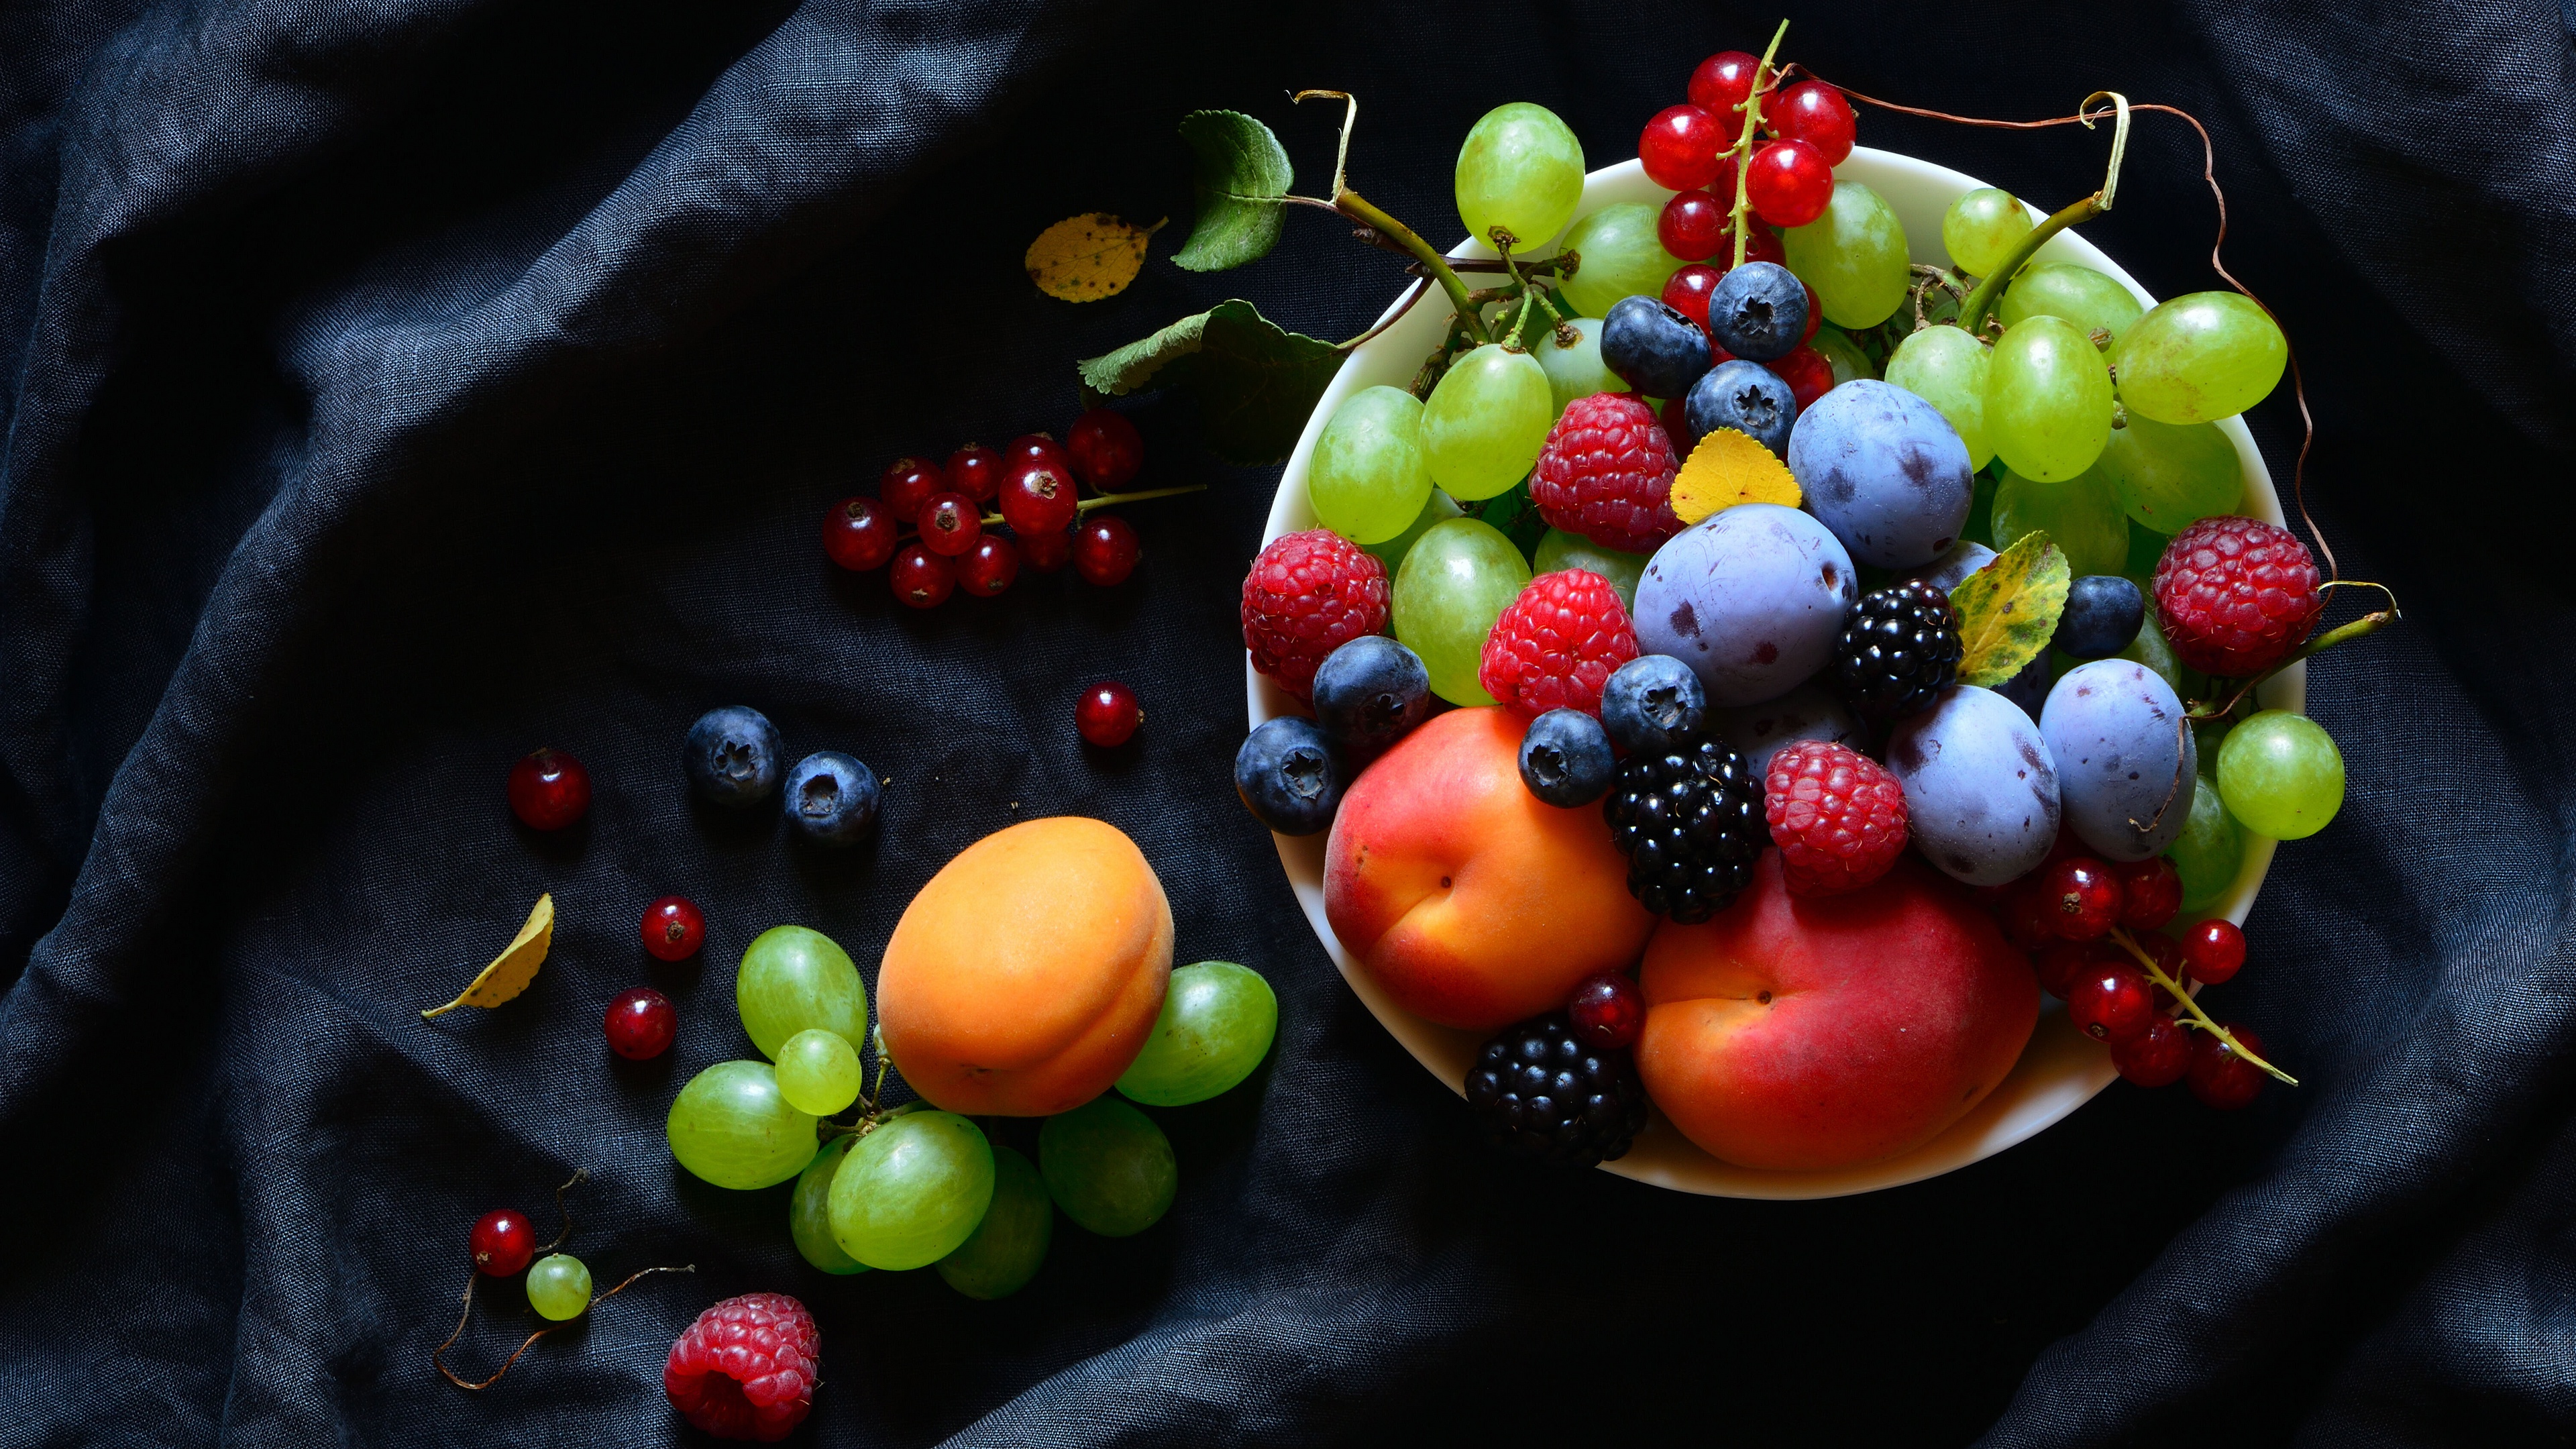 992352 免費下載壁紙 食物, 静物, 杏, 黑莓, 蓝莓, 醋栗, 葡萄, 油桃, 李子, 树莓 屏保和圖片